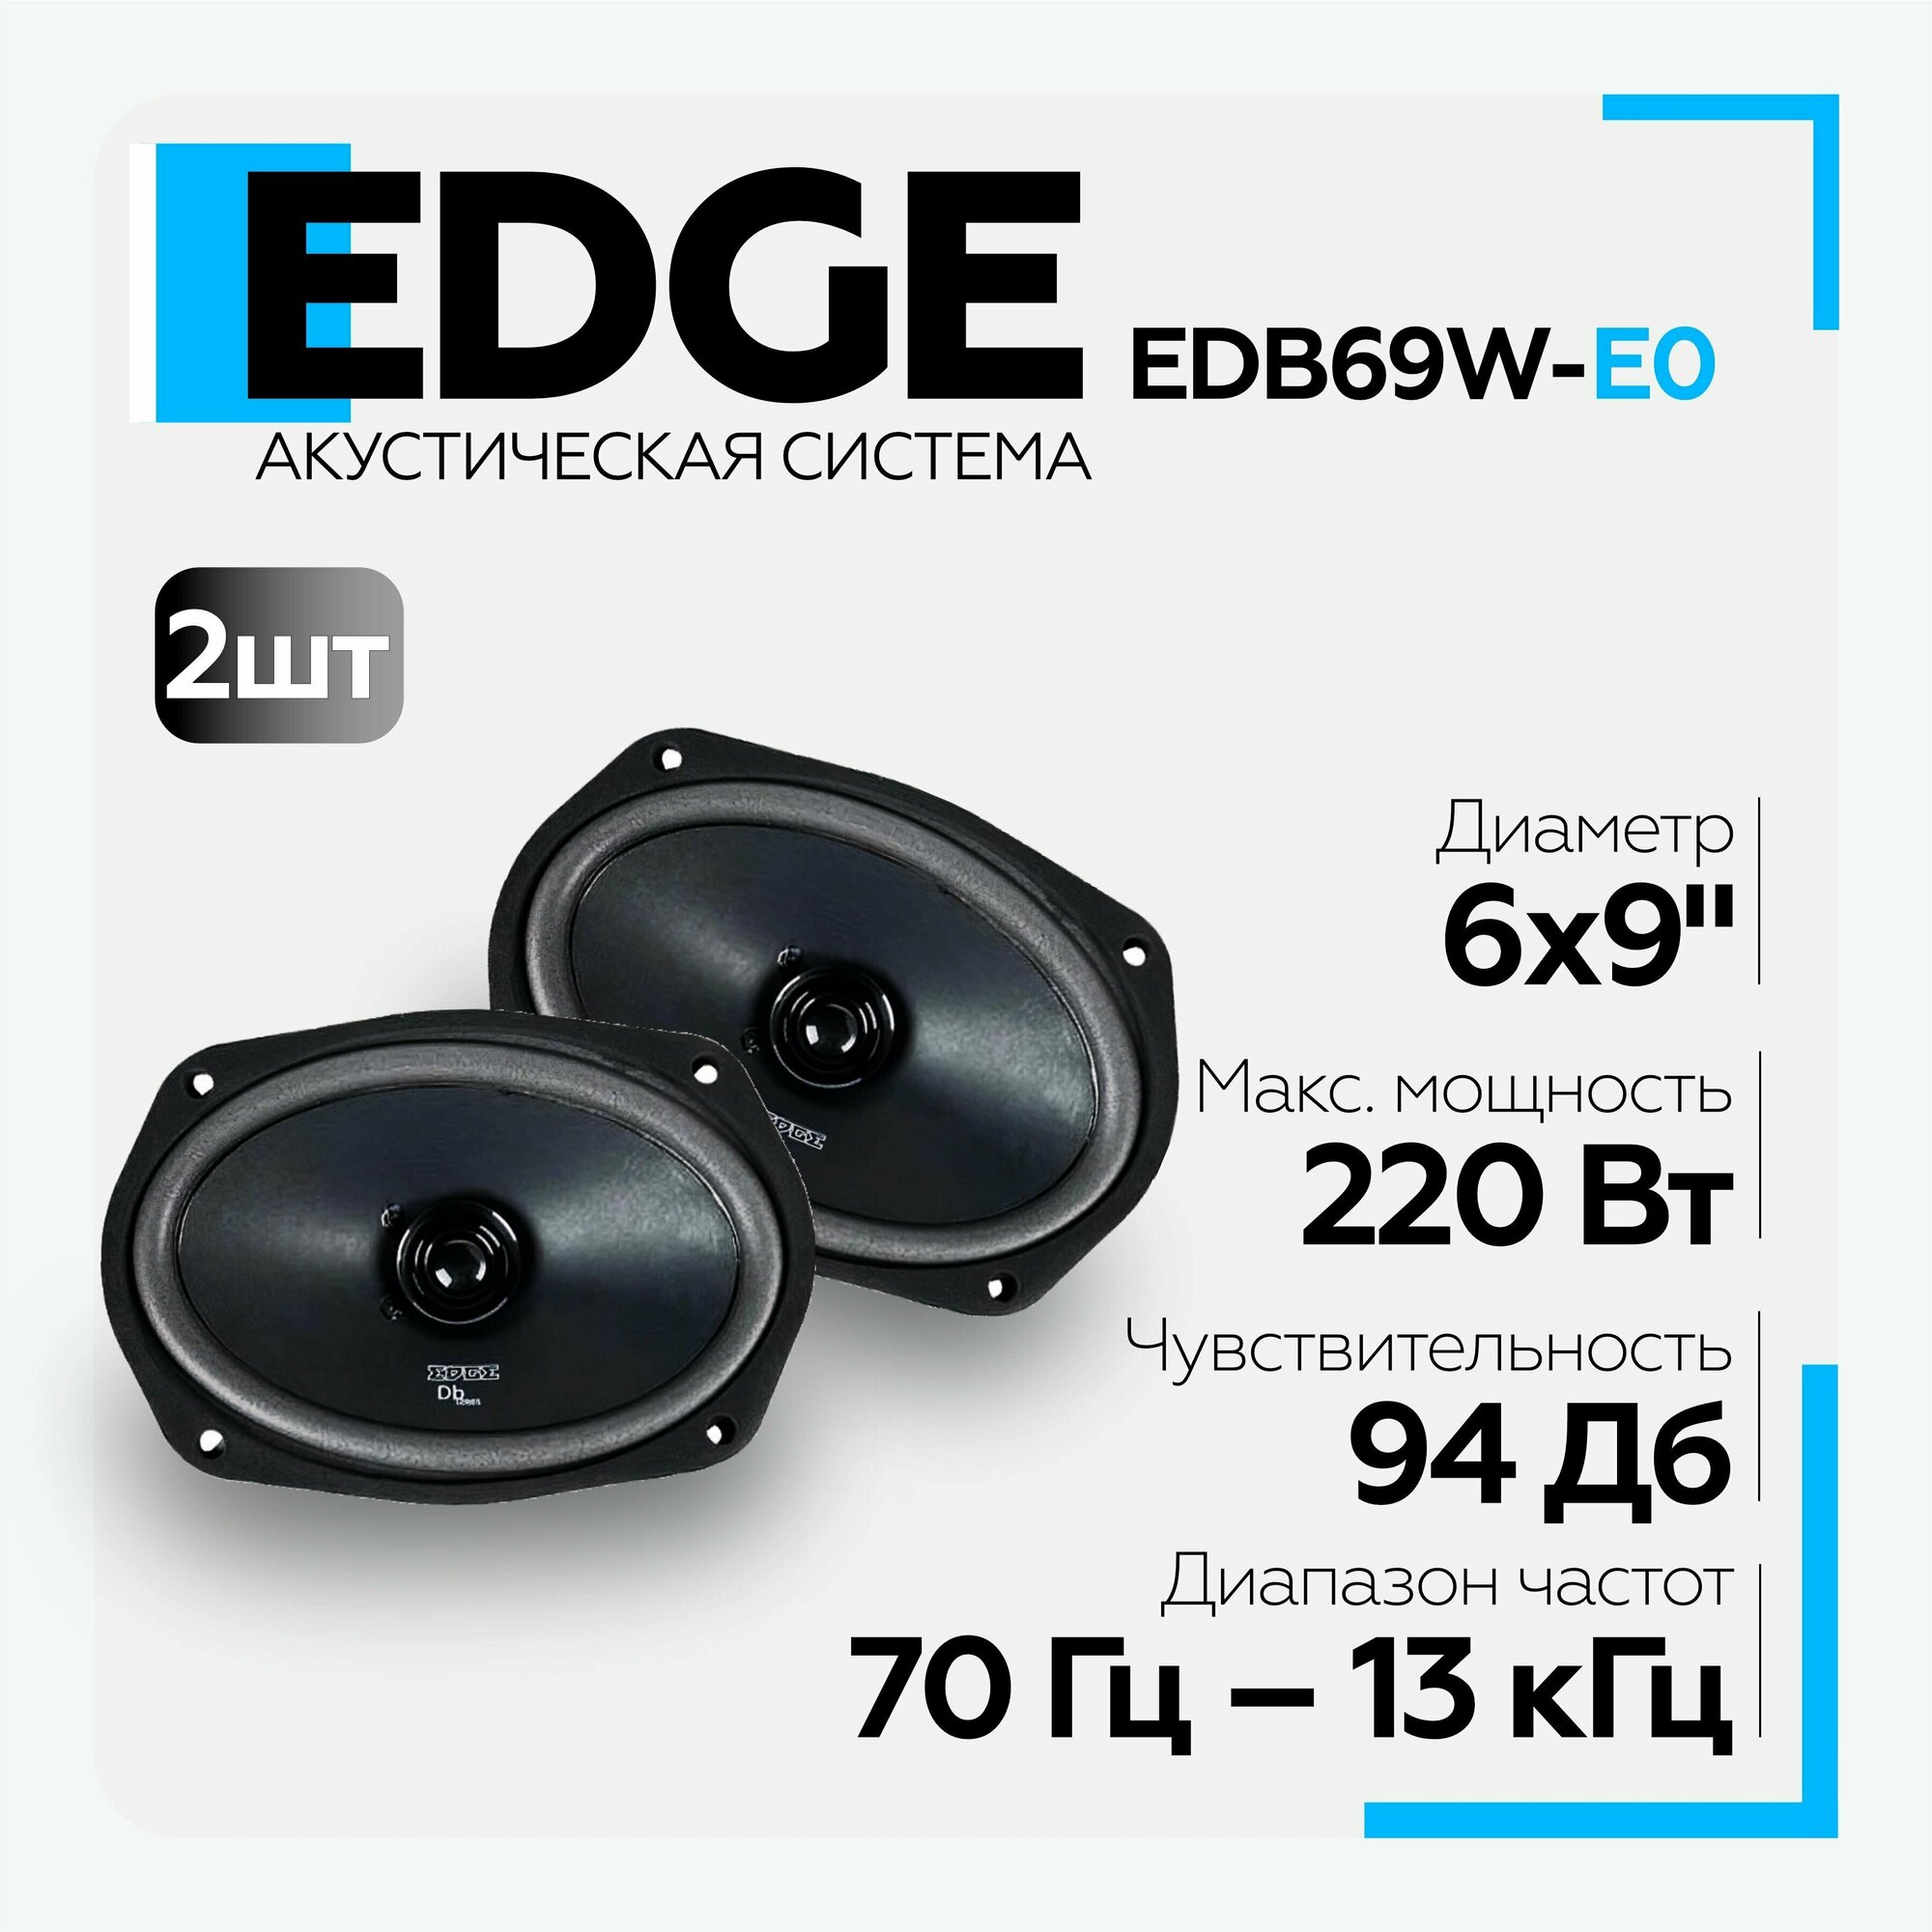 Акустическая система EDGE EDB69W-E0 широкополосные динамики